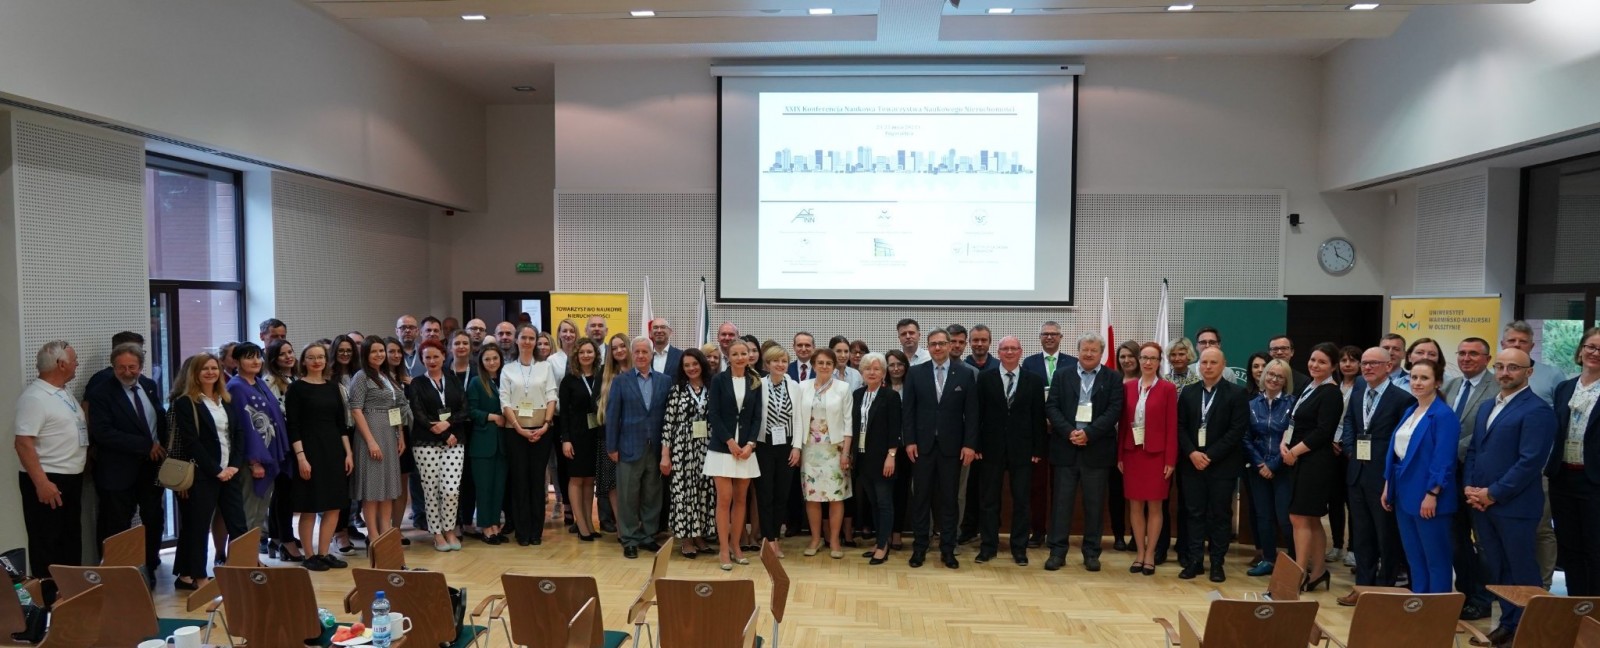 XXIX Krajowa Konferencja Naukowa Towarzystwa Naukowego Nieruchomości w Pogorzelicy